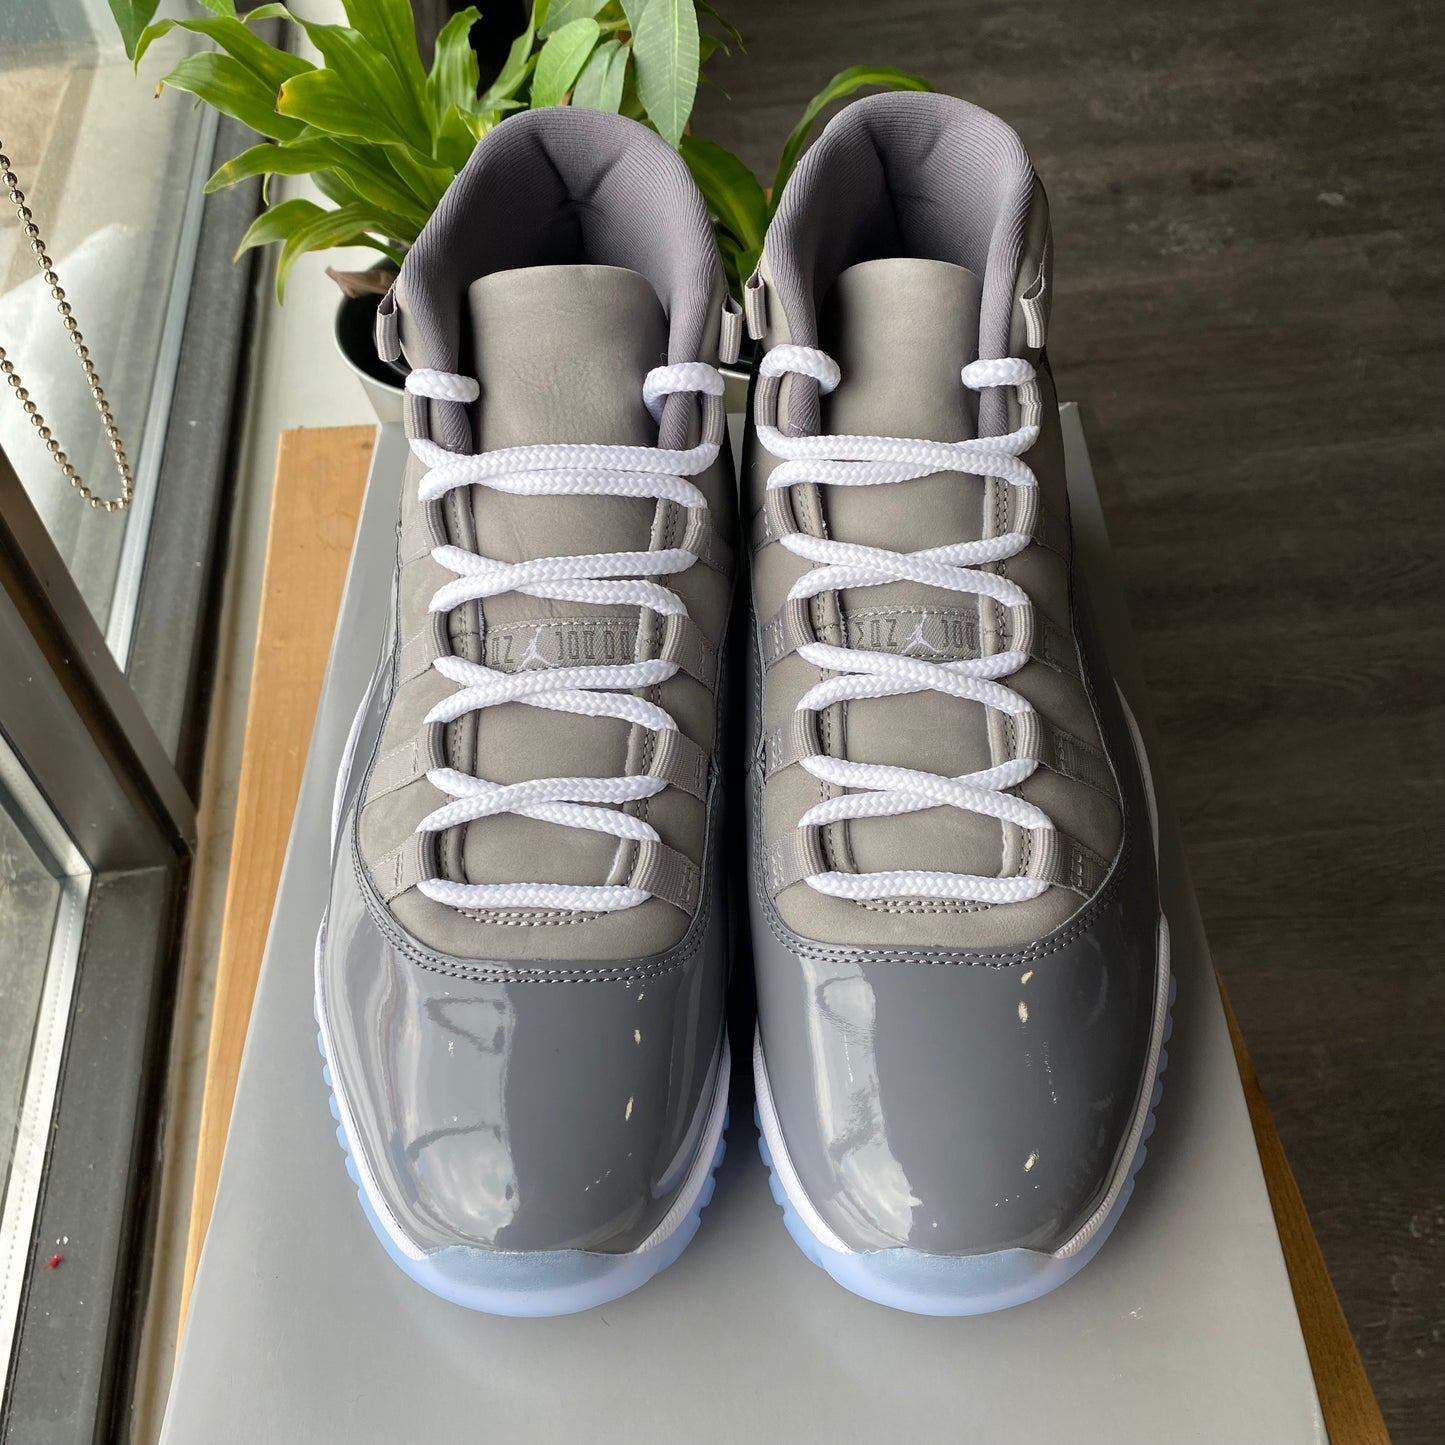 Brand New Air Jordan 11 "Cool Grey"